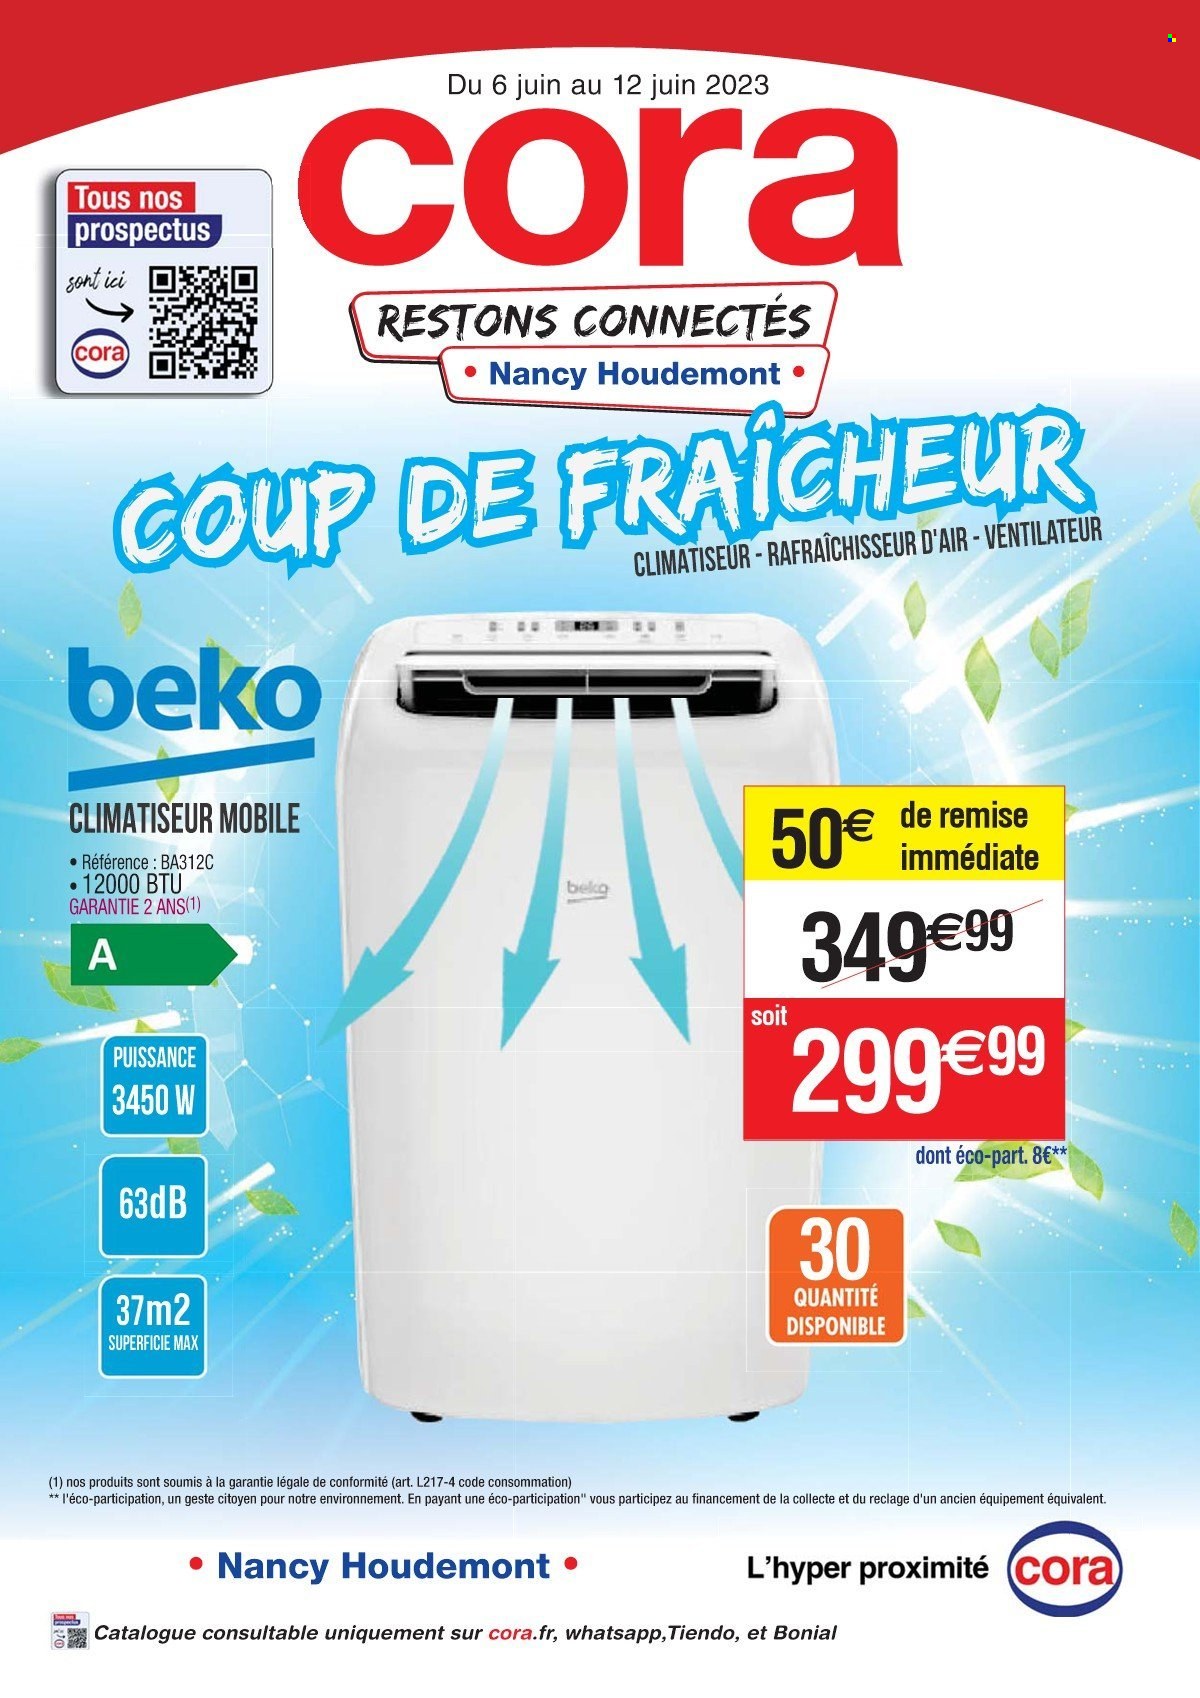 thumbnail - Catalogue Cora - 06/06/2023 - 12/06/2023 - Produits soldés - Beko, climatiseur, rafraichisseur d'air, ventilateur. Page 1.